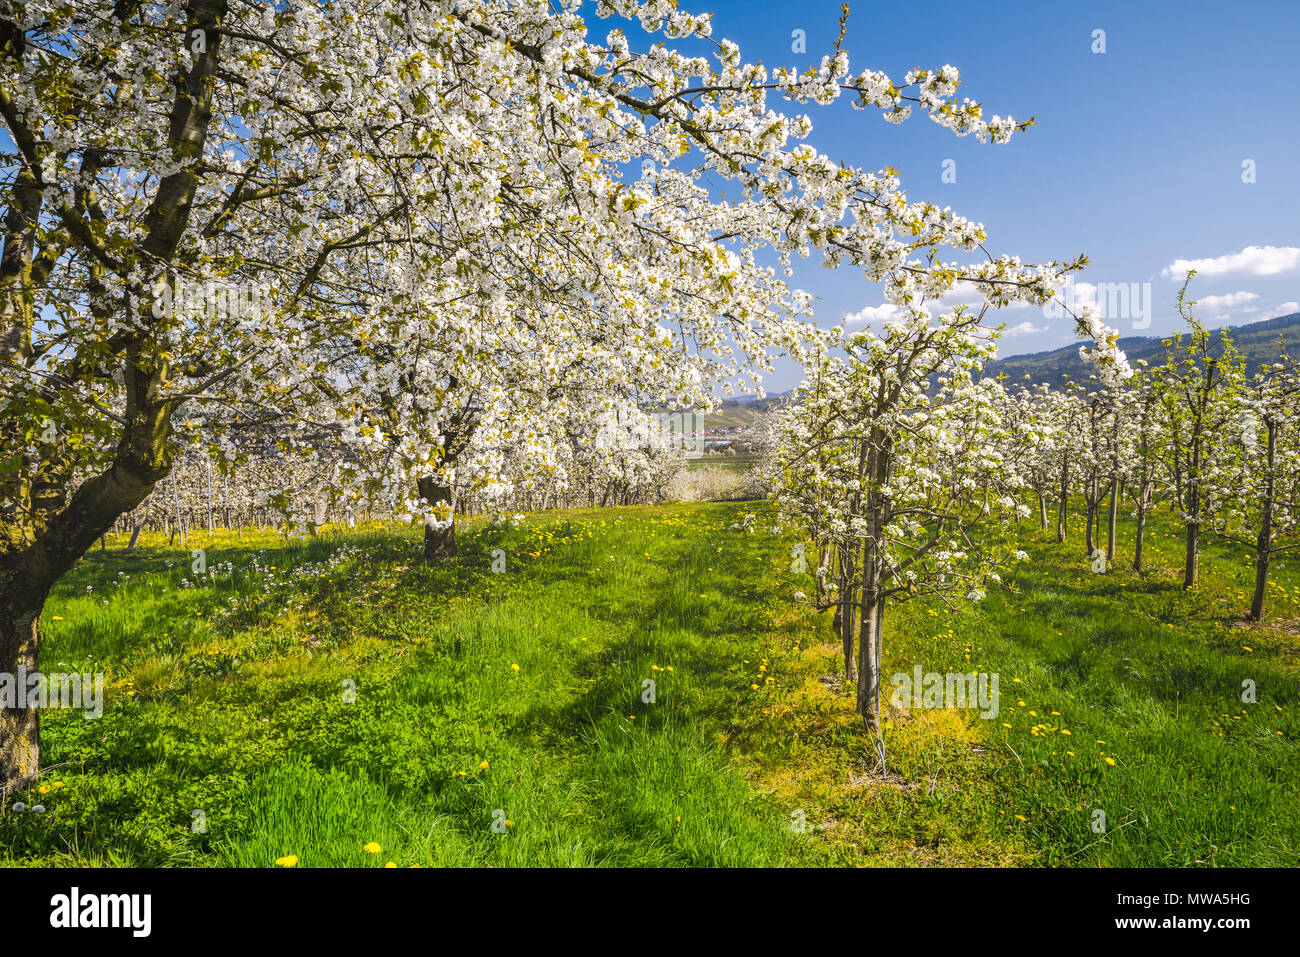 Obstgarten mit blühenden Kirschbäumen, in der Nähe von Oberkirch, Deutschland, kulturelle Landschaft am Fuße des Schwarzwalds im Frühling Stockfoto